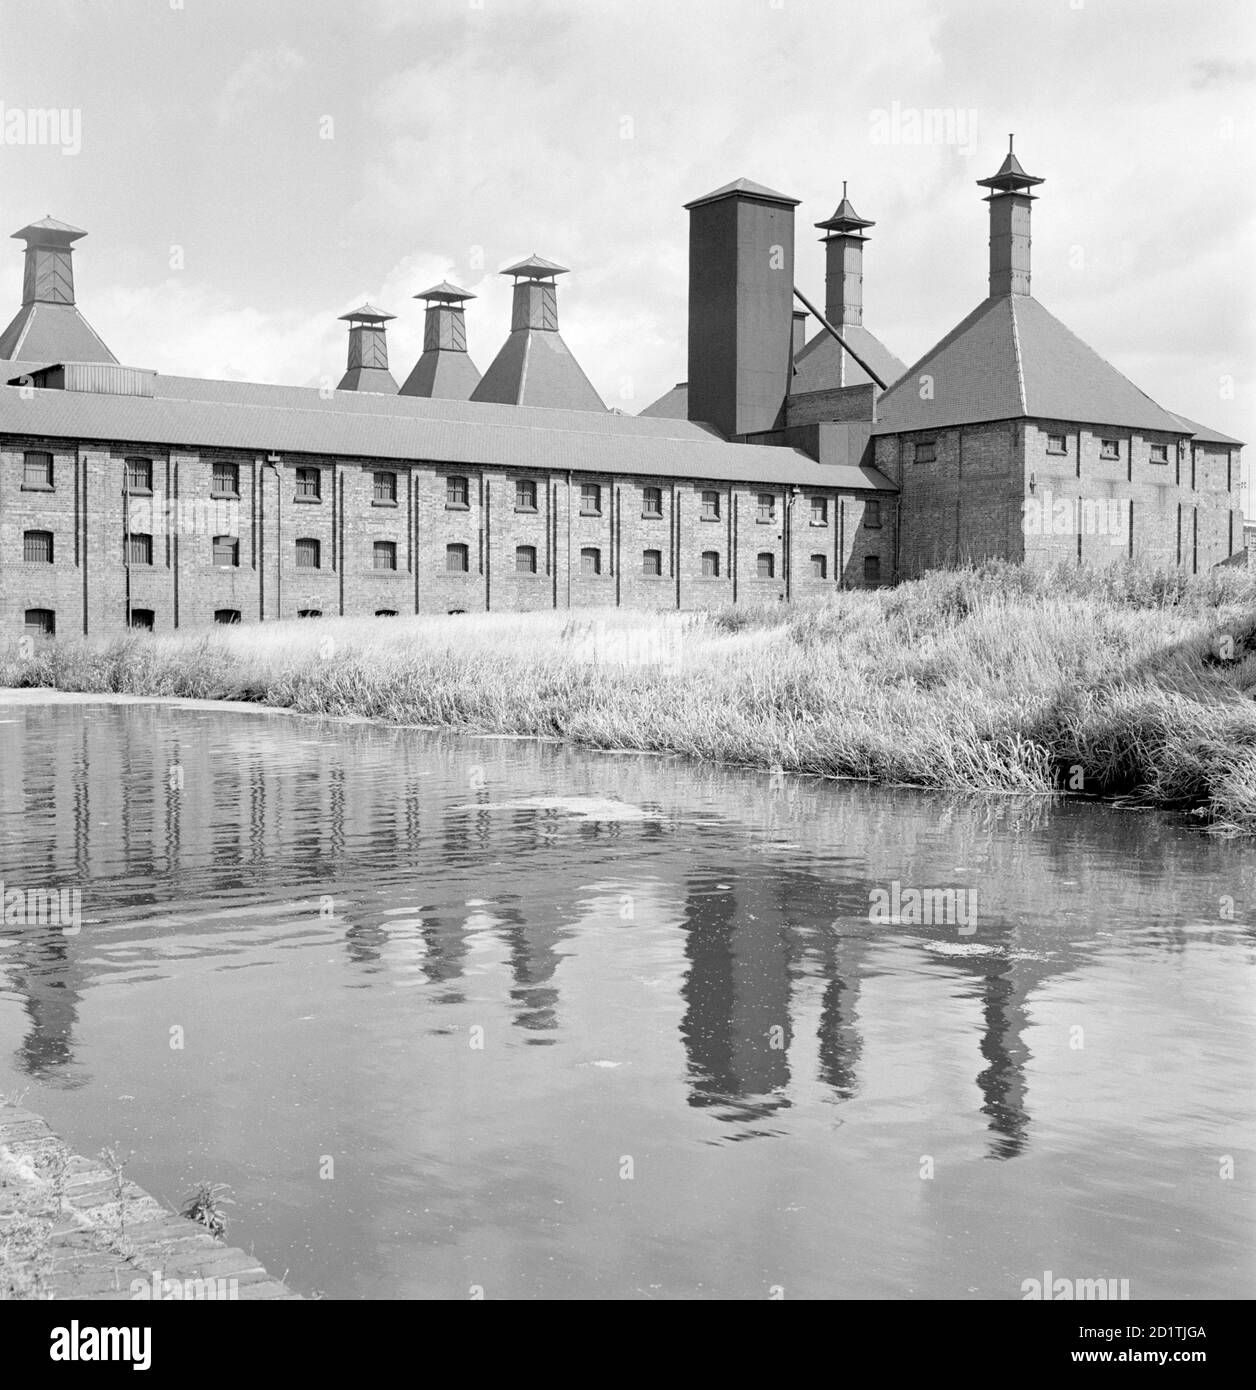 LANGLEY MALLINGS, Western Road, Langley, West Midlands. Langley Maltings risale al 1880, e ha eccellenti collegamenti di trasporto in quanto confina sia la ferrovia che il canale di Birmingham. I tetti piramidali quadrati dei forni di essiccazione sono distintivi. Una vicina fabbrica di birra è stata poi demolita. Fotografato da Eric de Mare nel 1956. Foto Stock